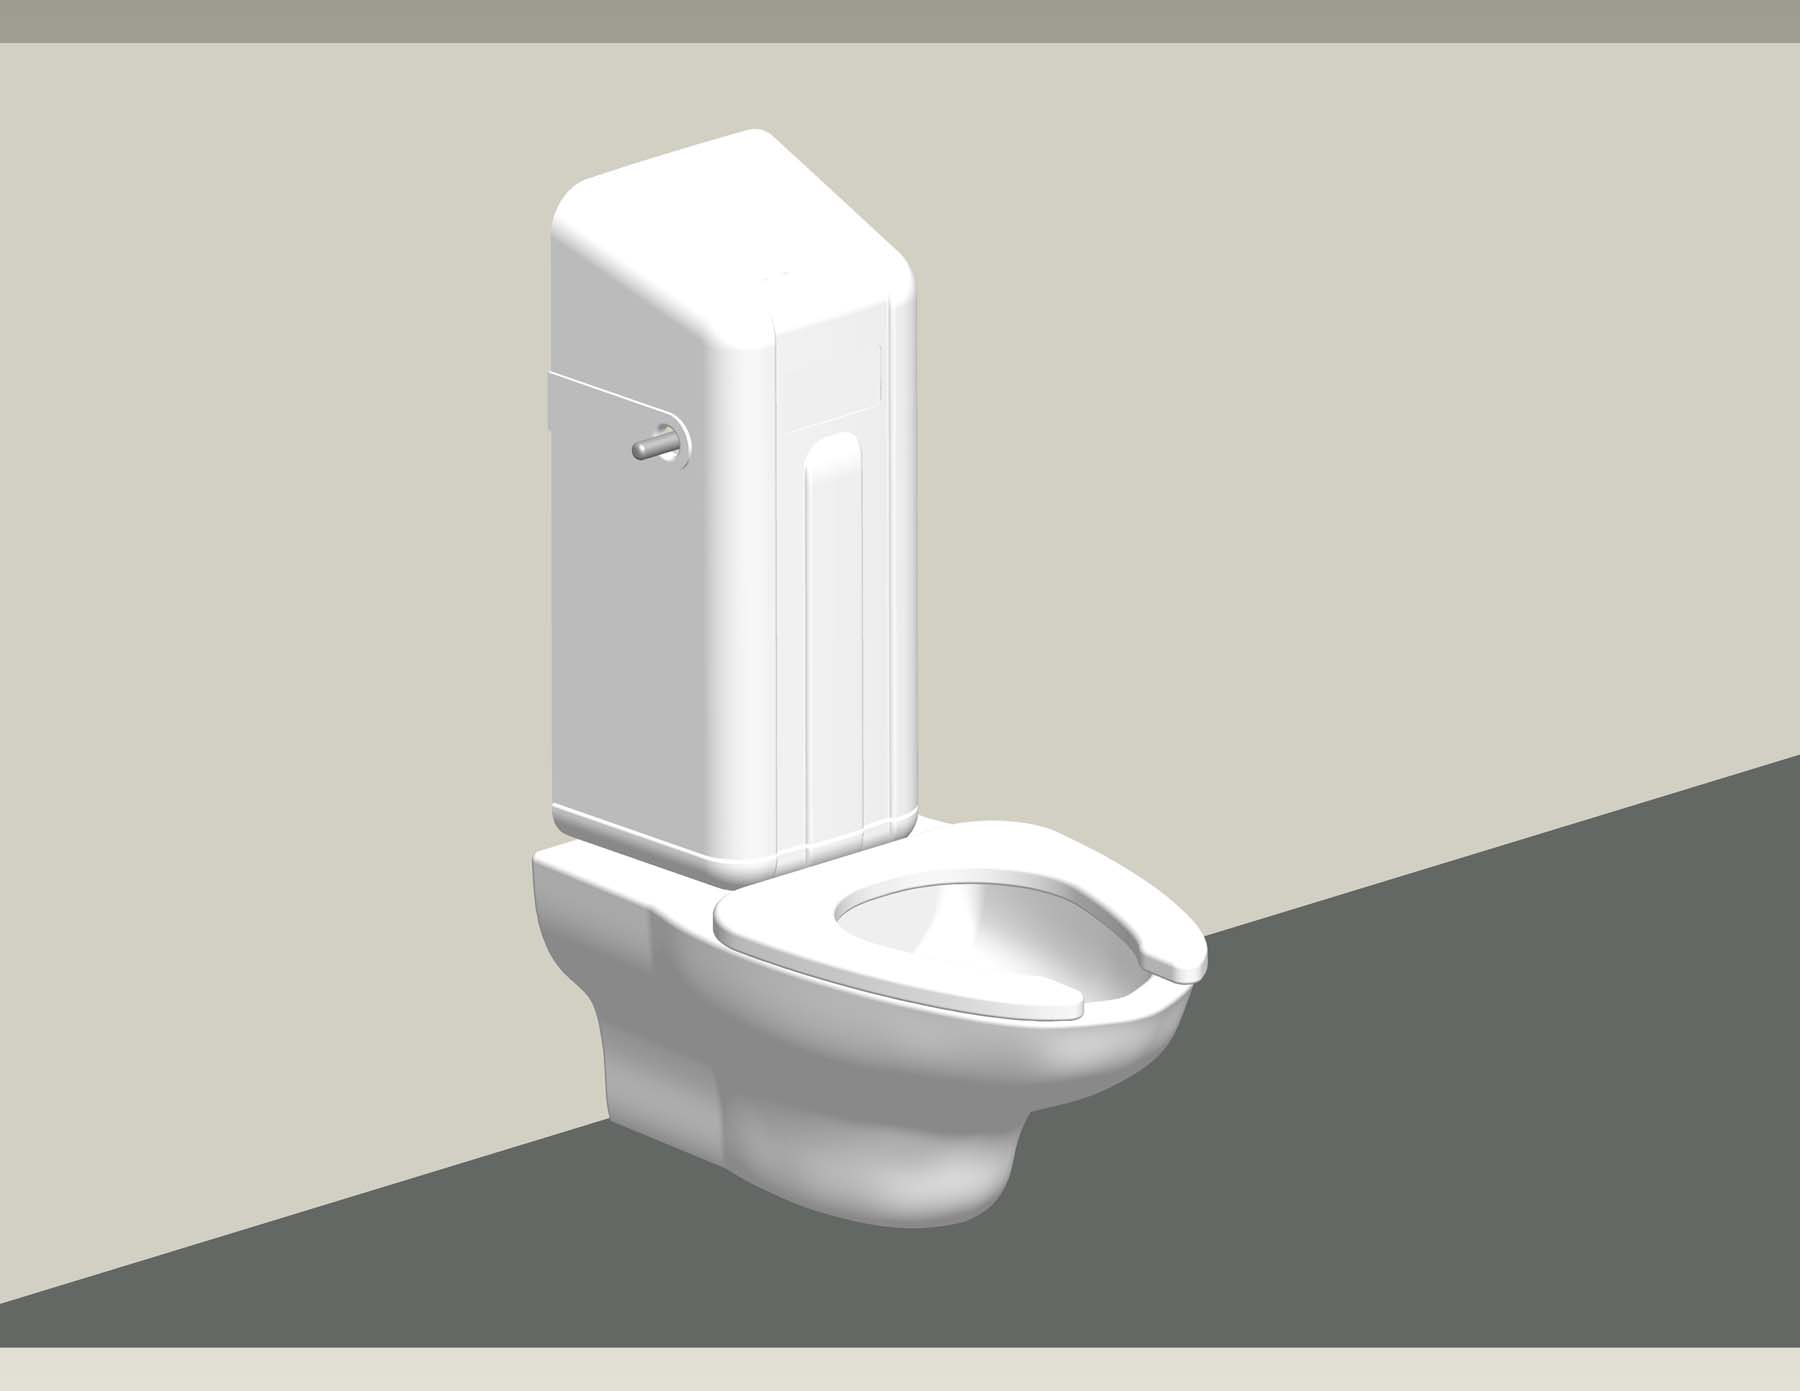 Ligature Resistant Flush Valve Cover Demonstration - 2 on toilet